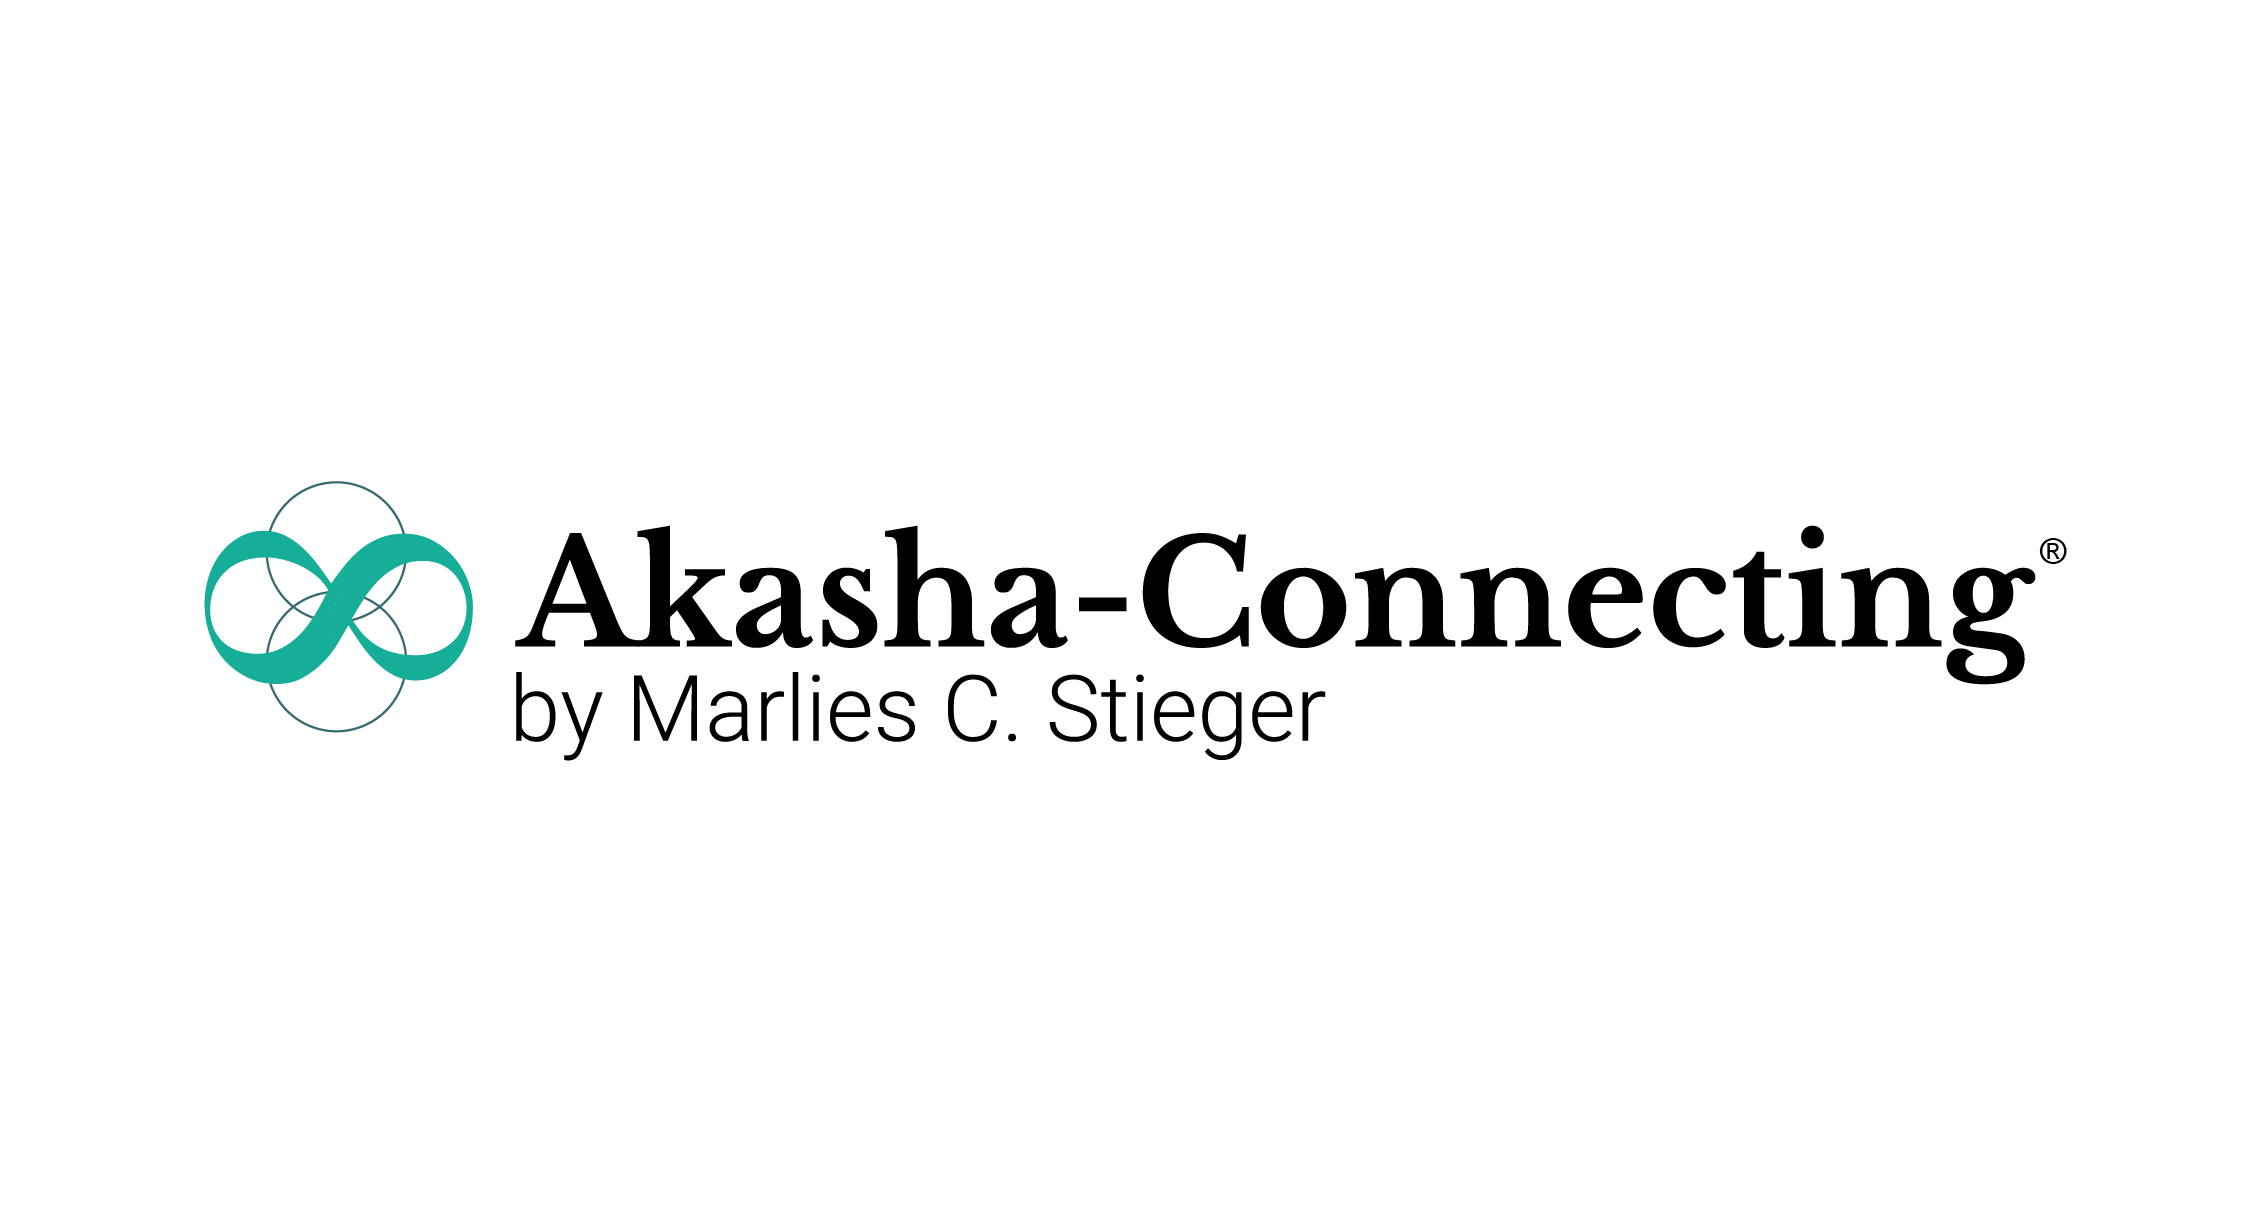 Leitbild, Werte und ErkennungsMerkmale eines Akasha Connectings®